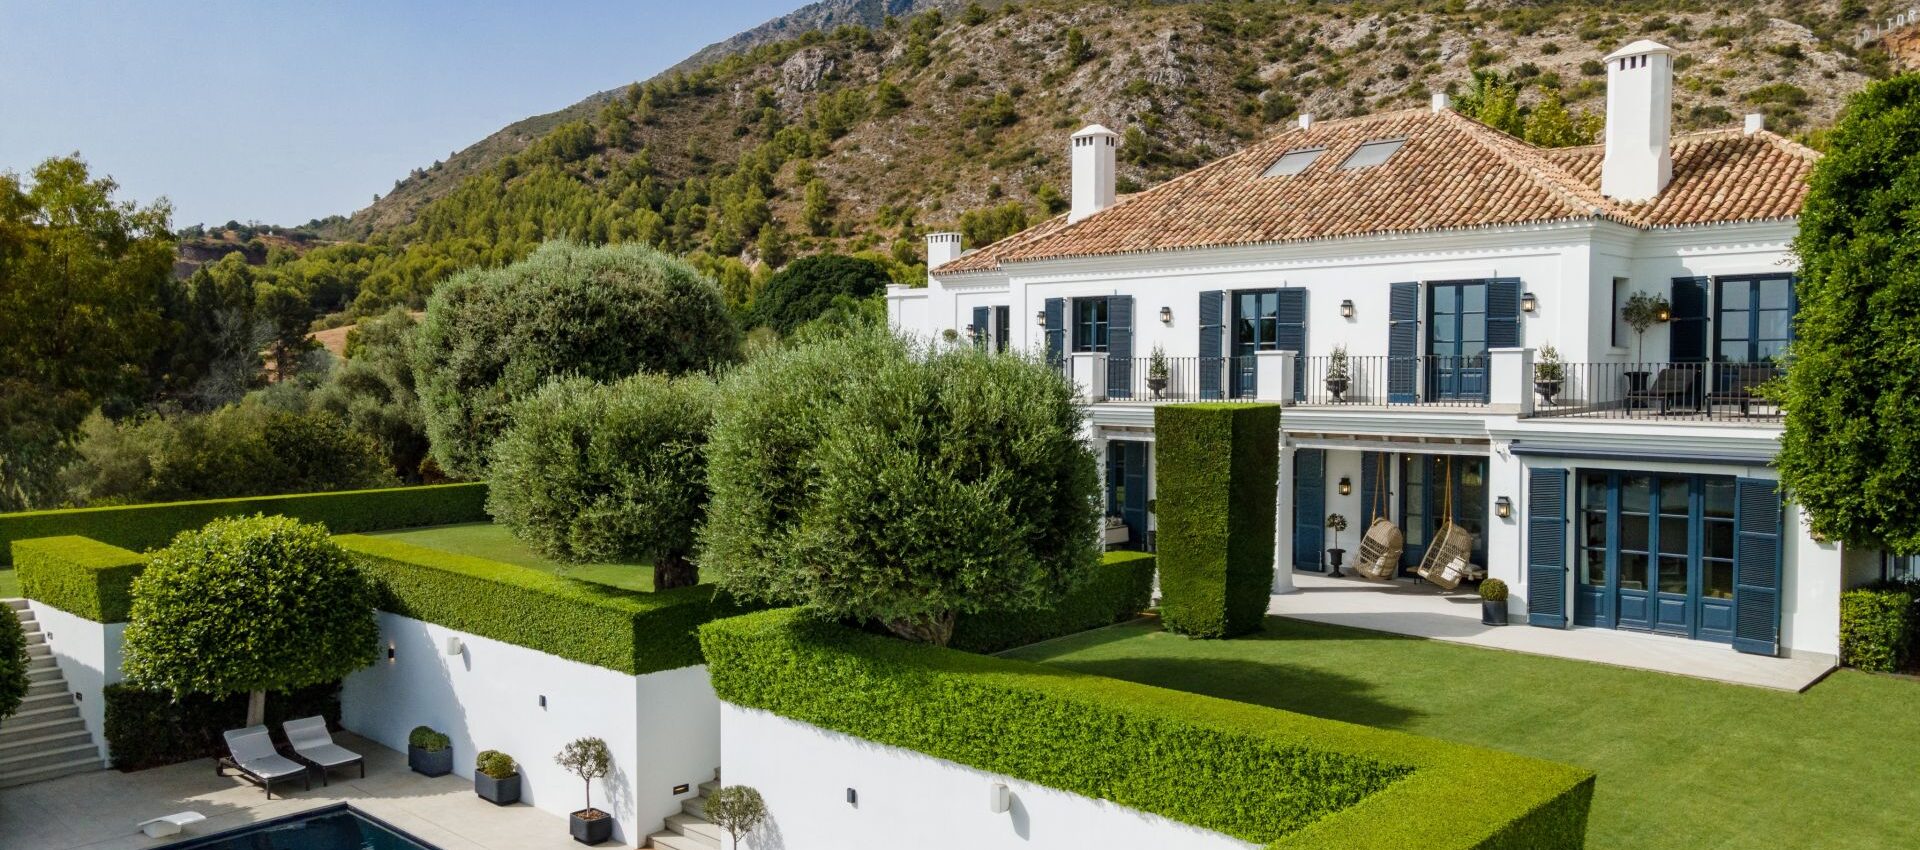 Elegante villa de lujo ubicada en una de las comunidades más exclusivas de Marbella